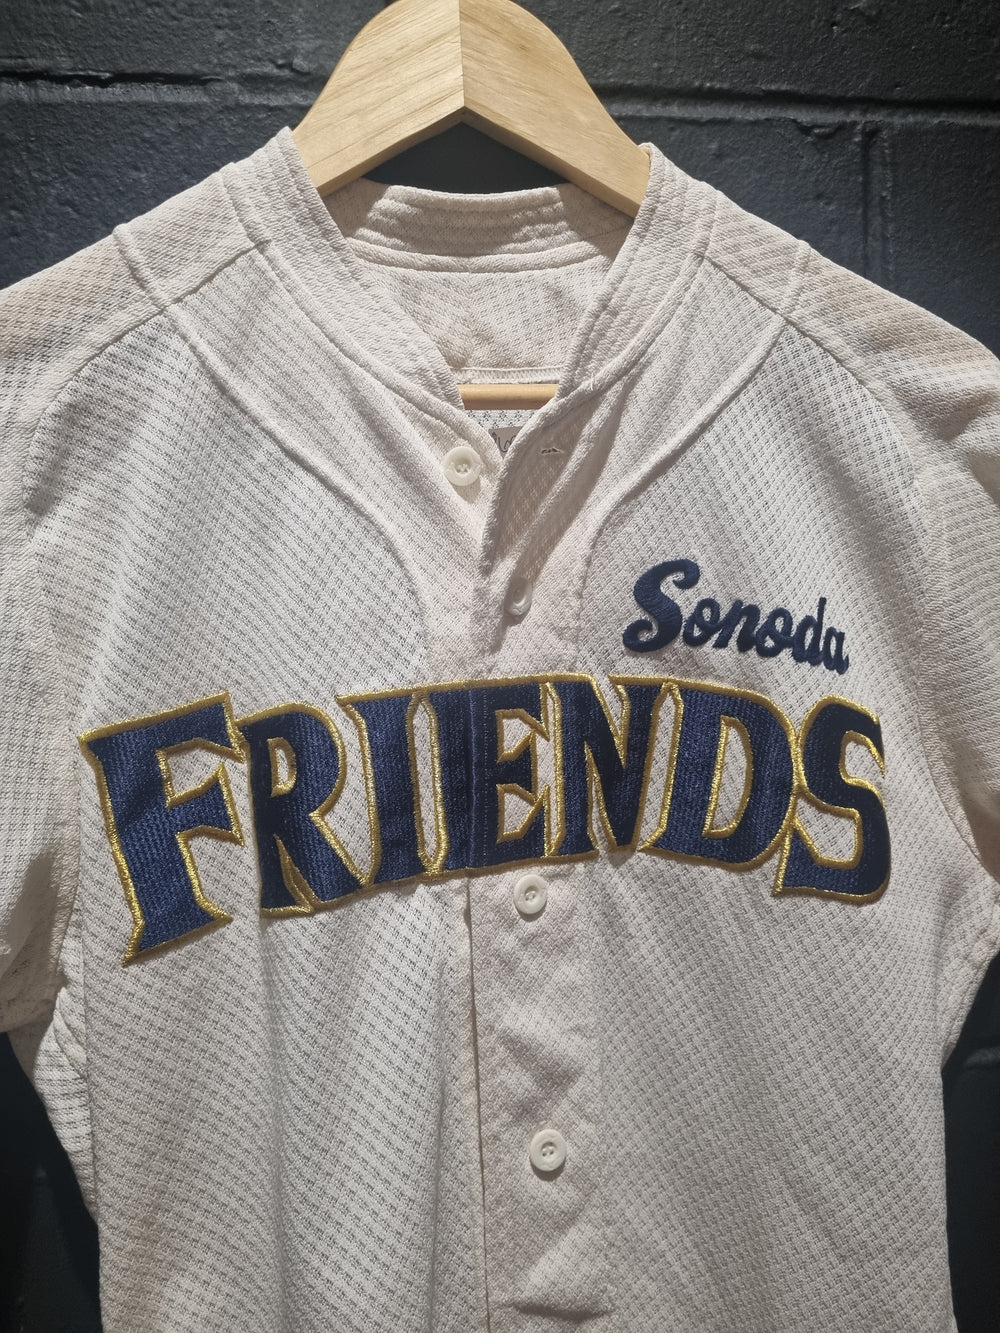 Friends Sonoda Little Baseball League Medium